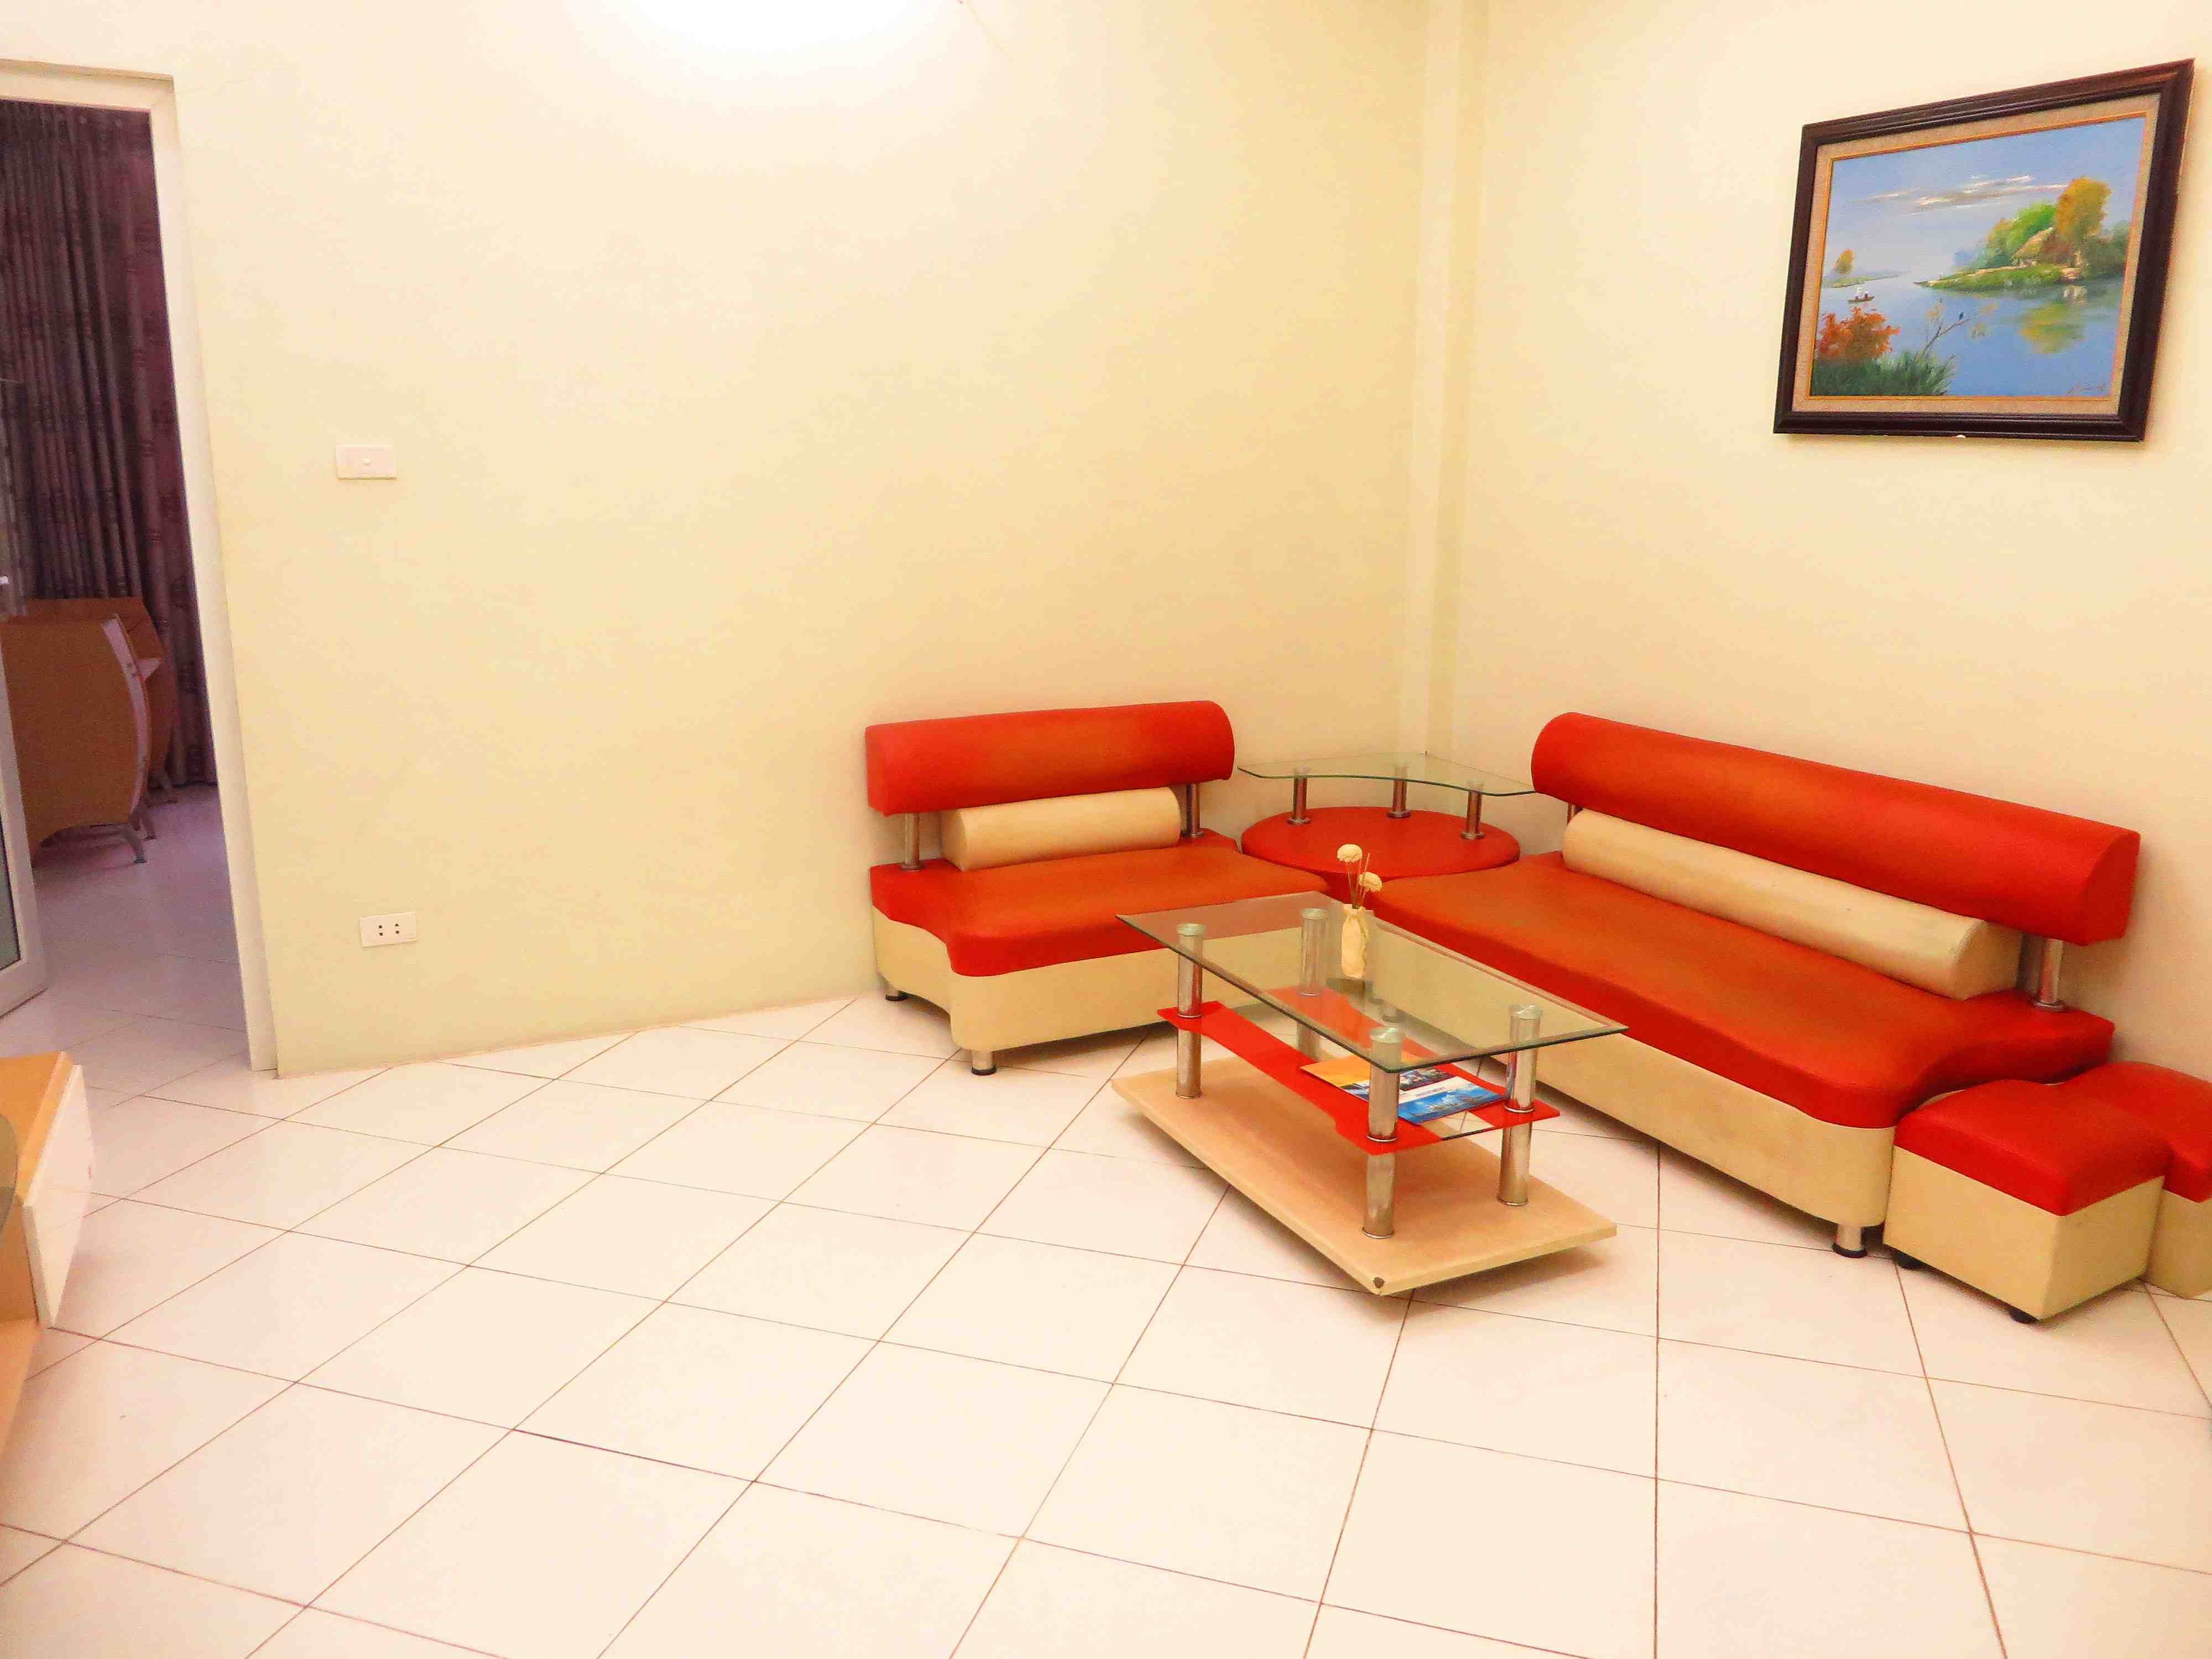 Cần cho thuê căn hộ dịch vụ 2 phòng ngủ tại Vạn Bảo, quận Ba Đình